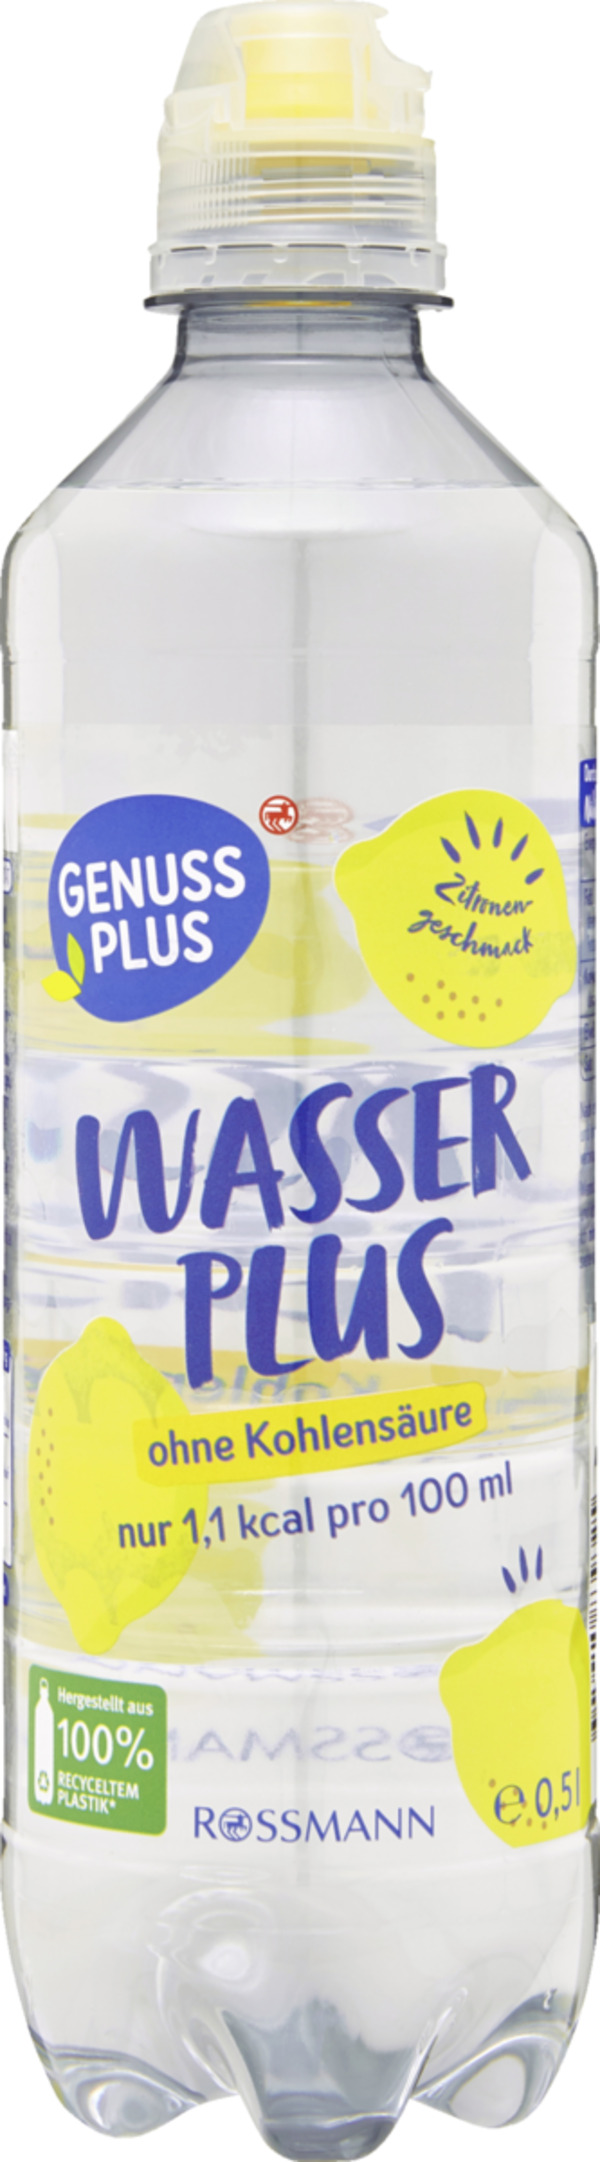 Bild 1 von GENUSS PLUS WasserPlus Zitronengeschmack 0,5 l still